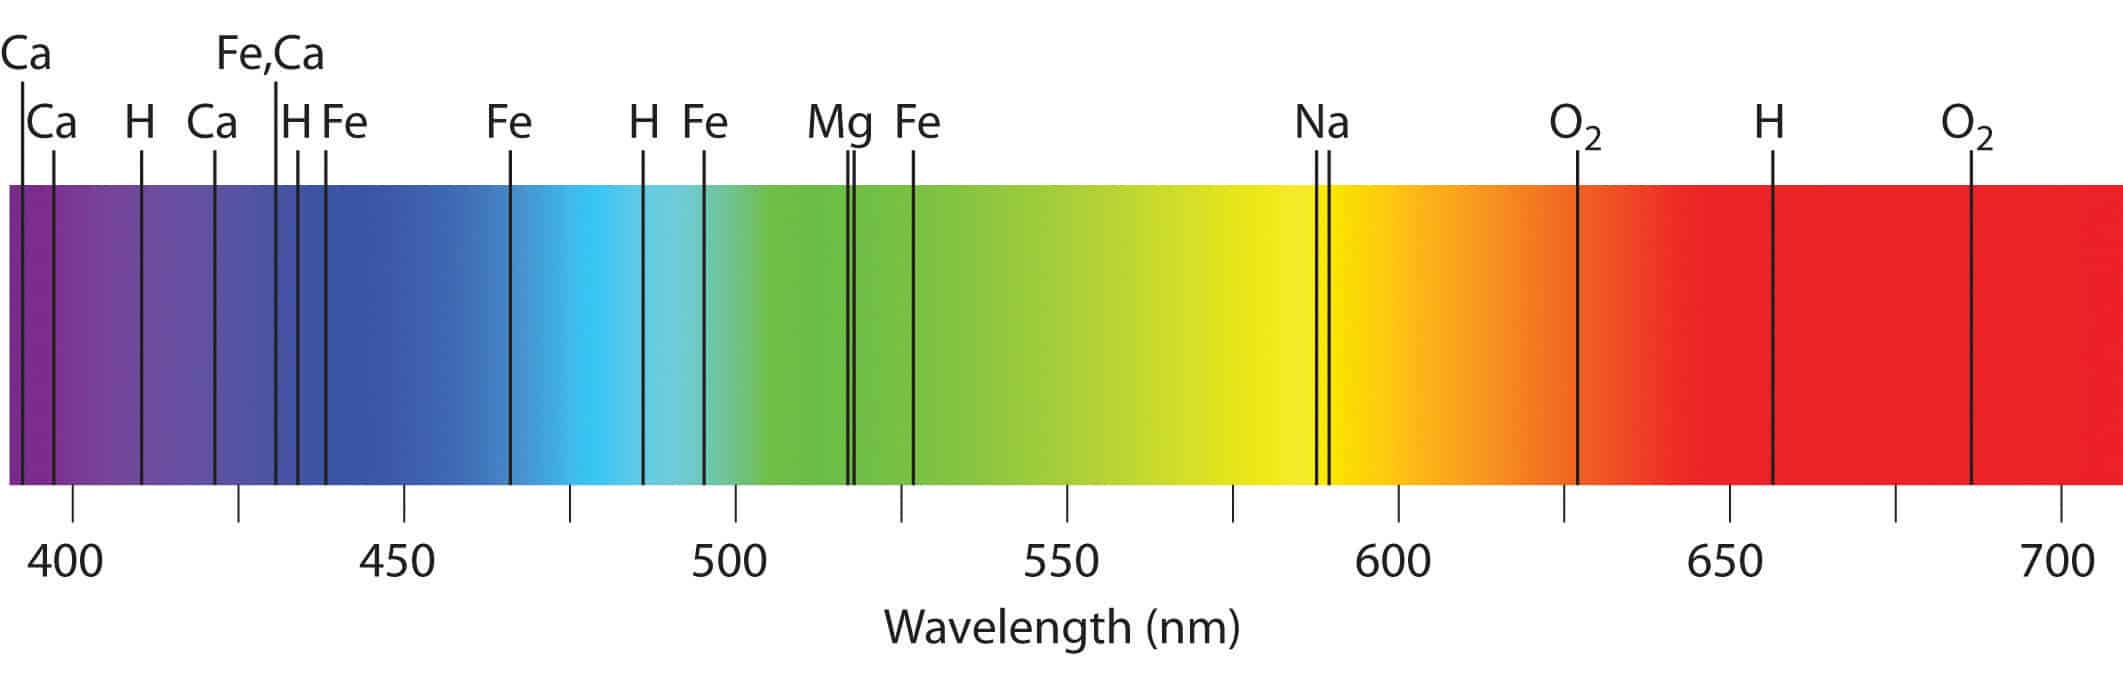 atomic spectra of potassium